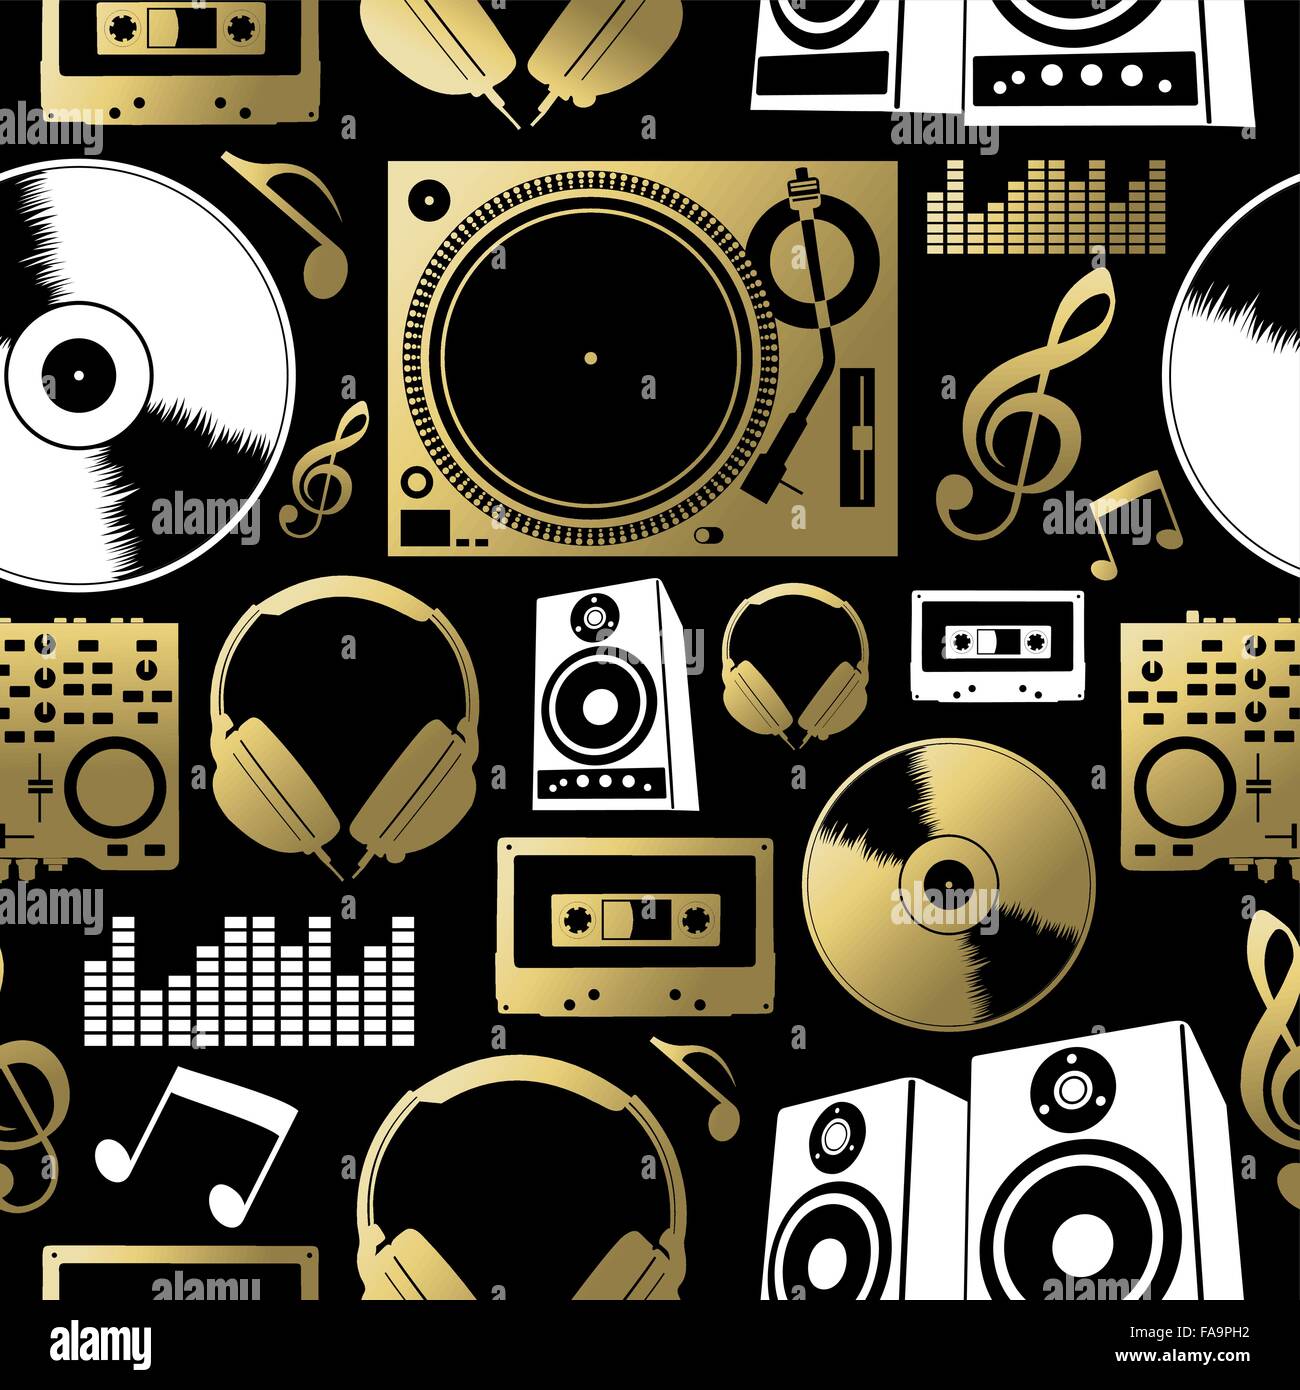 Musik-Konzept Musterdesign mit Symbolen gemacht. Dj, Rock, Club und audio-Elemente enthält. EPS10 Vektor. Stock Vektor